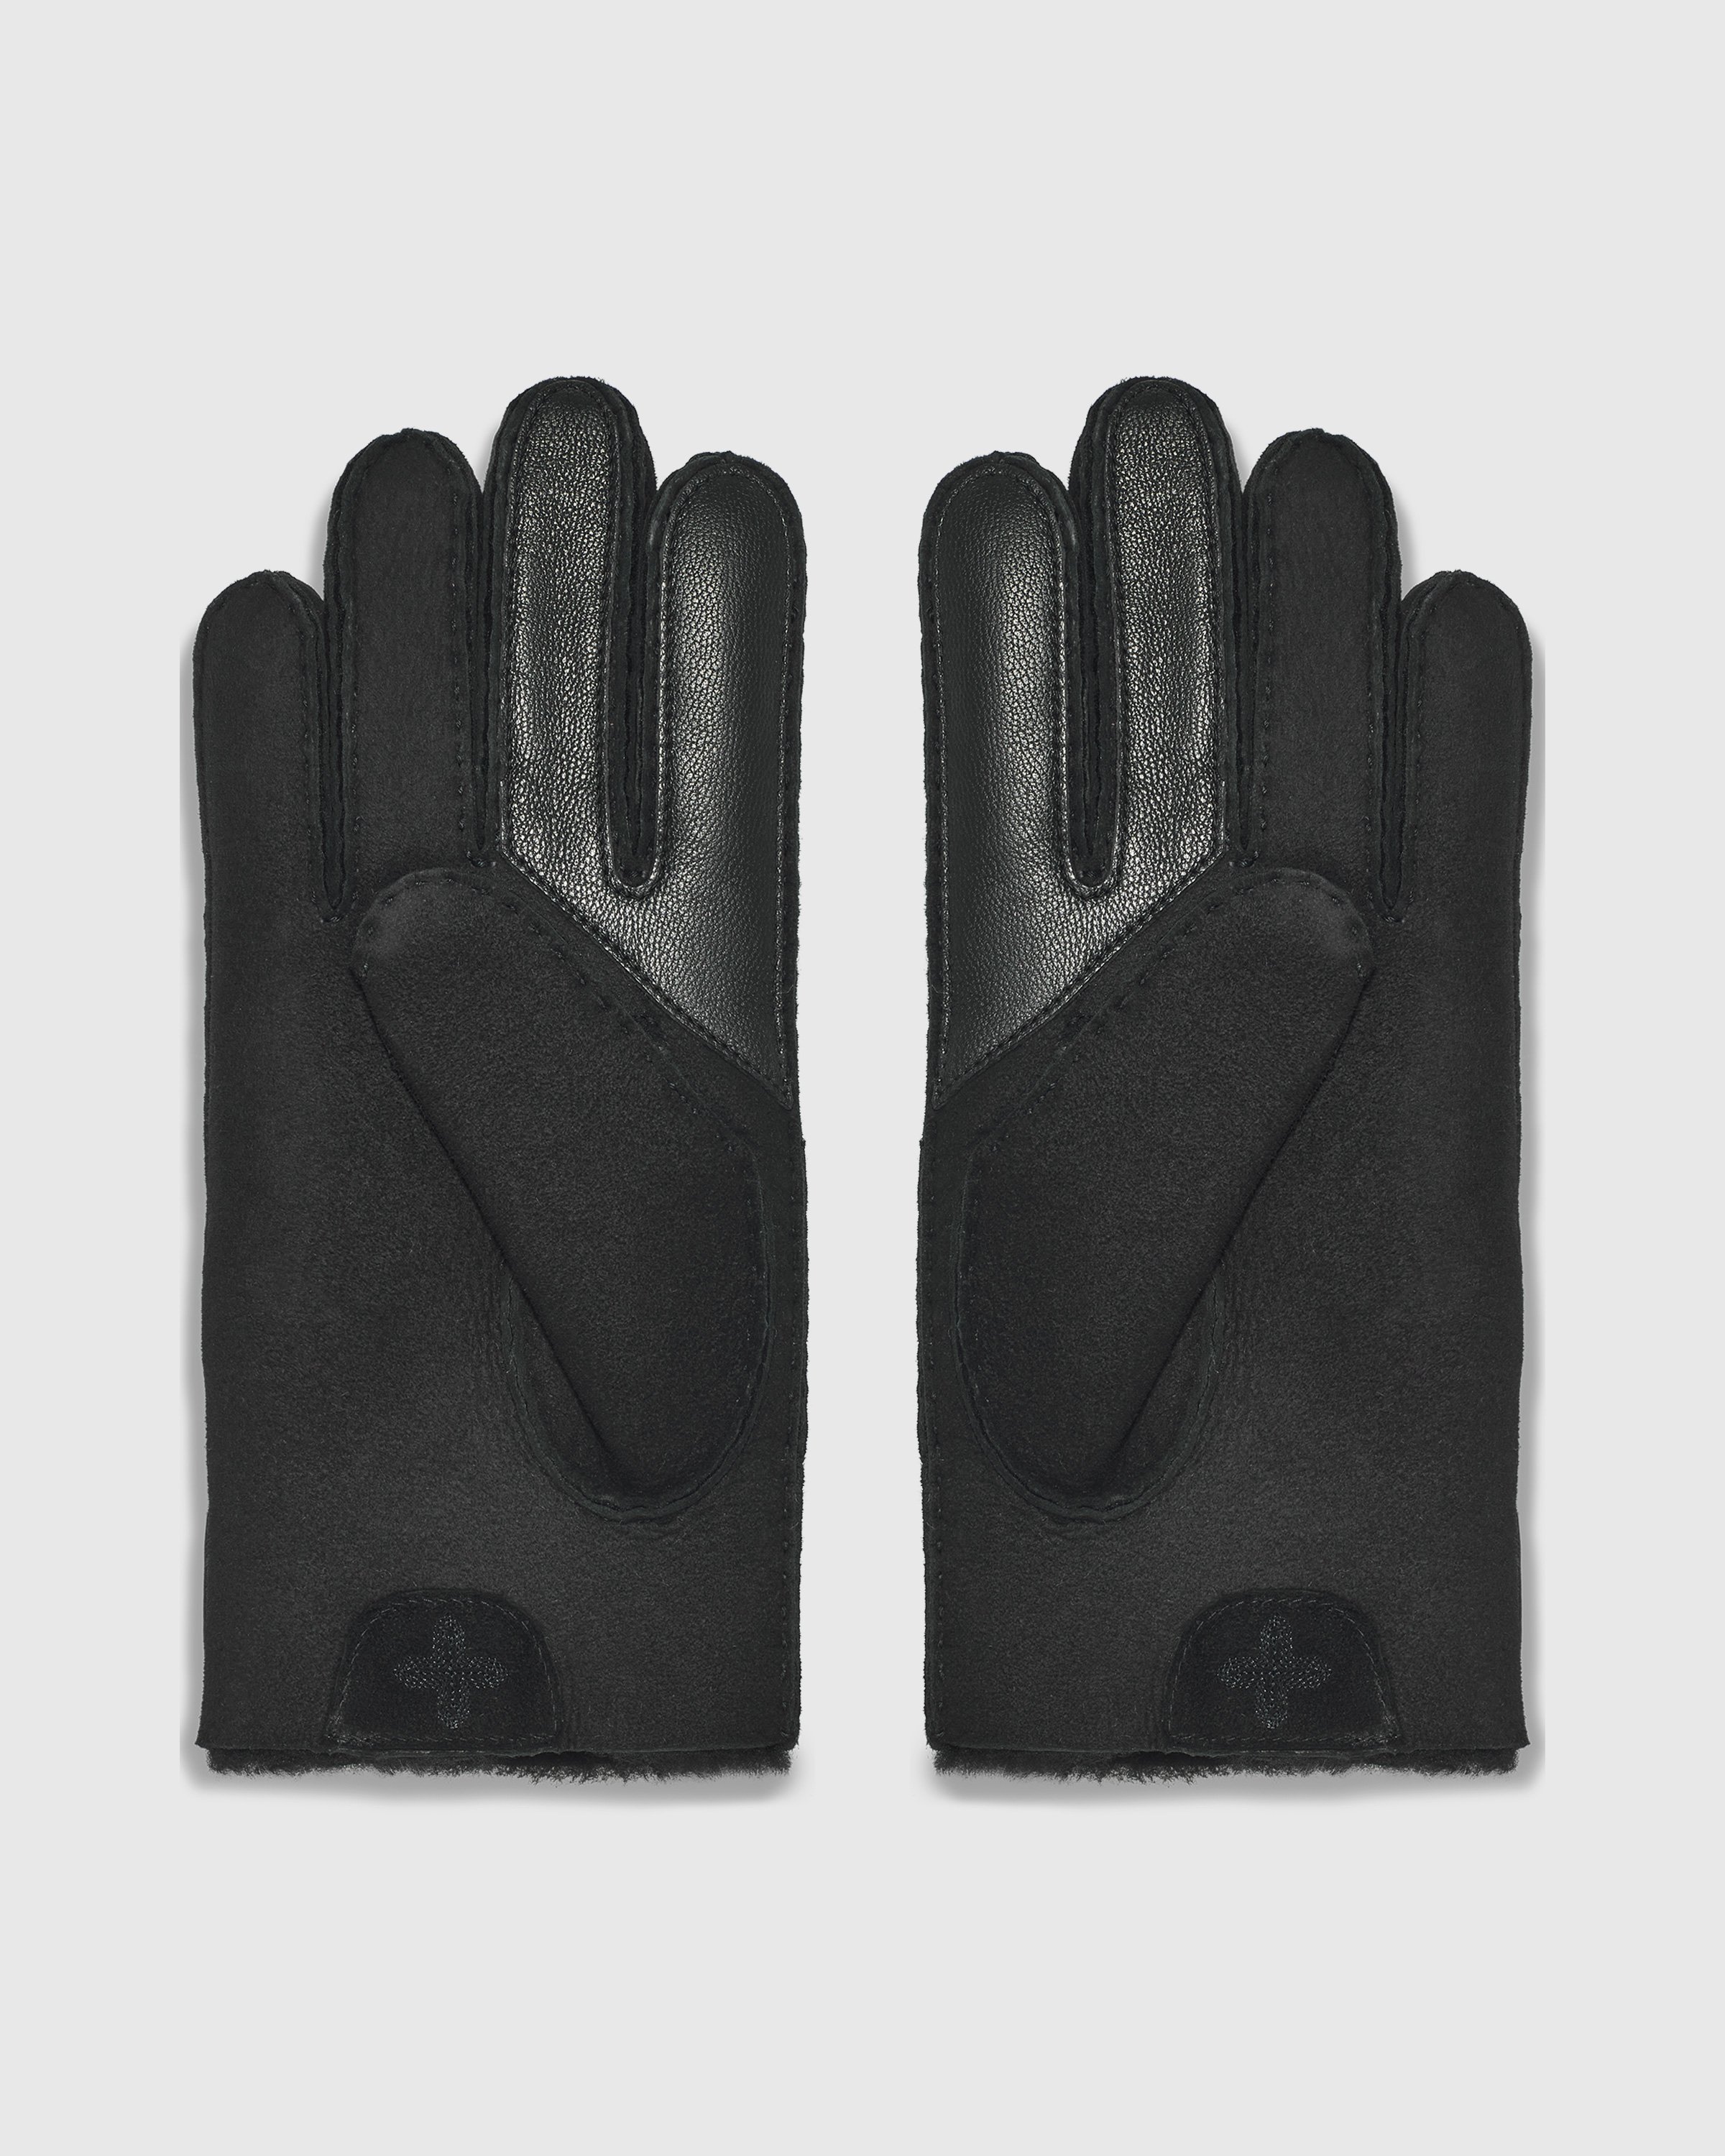 Ugg x Children of the Discordance - Sheepskin Gloves Black - Accessories - Black - Image 2